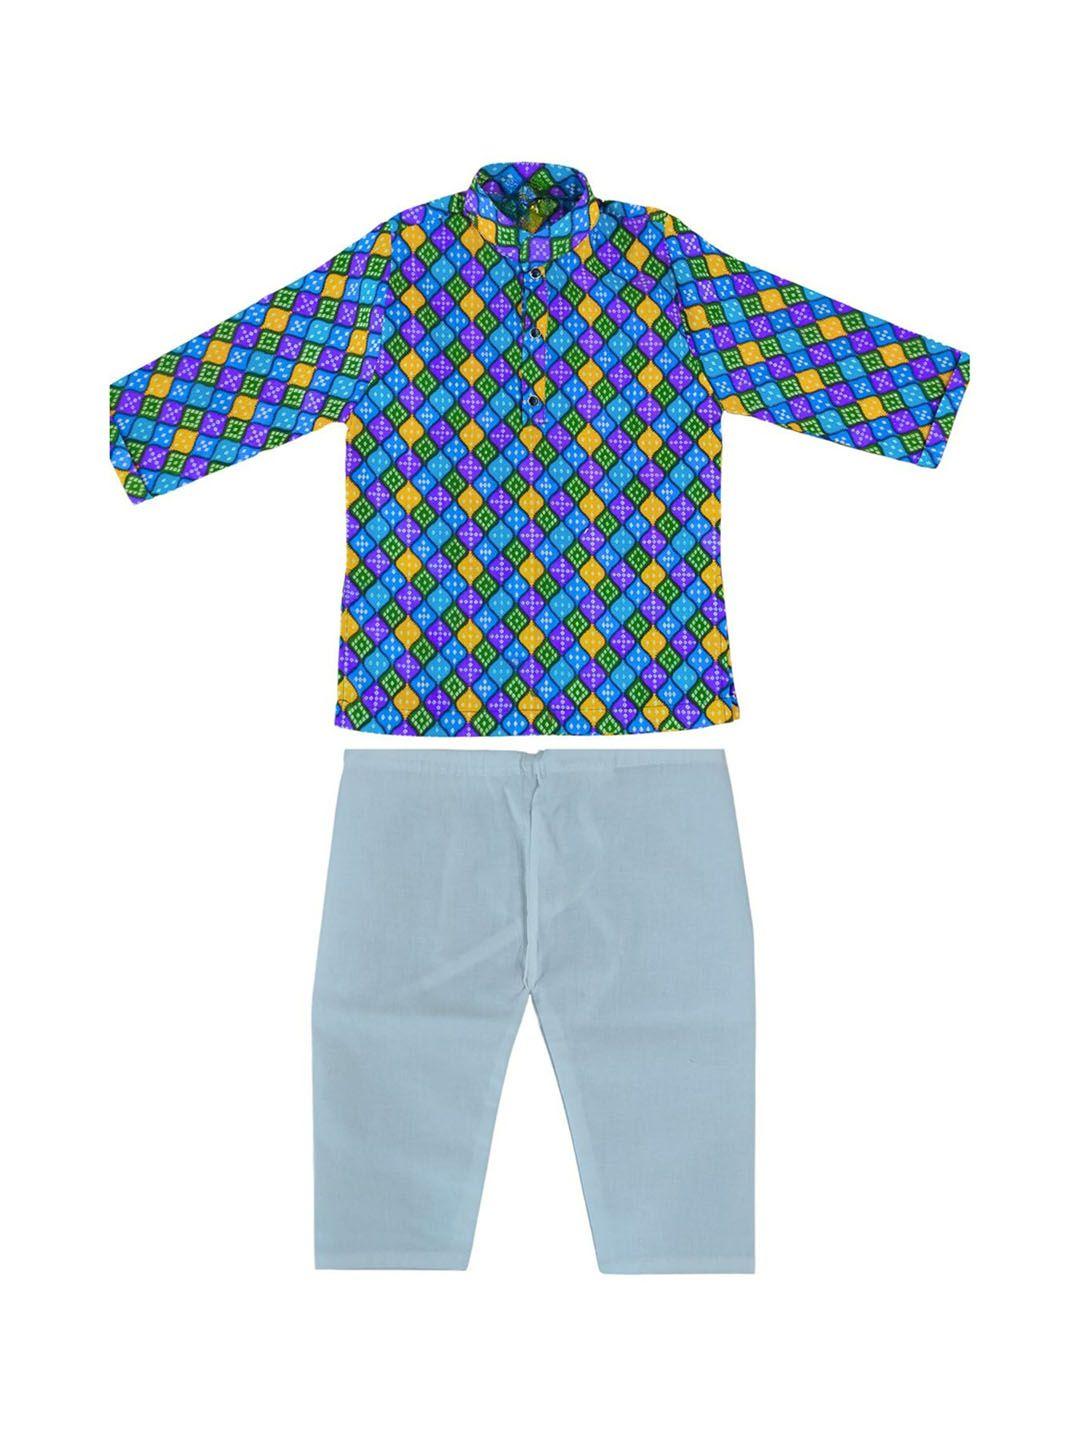 baesd boys bandhani printed straight pure cotton kurta with pyjamas